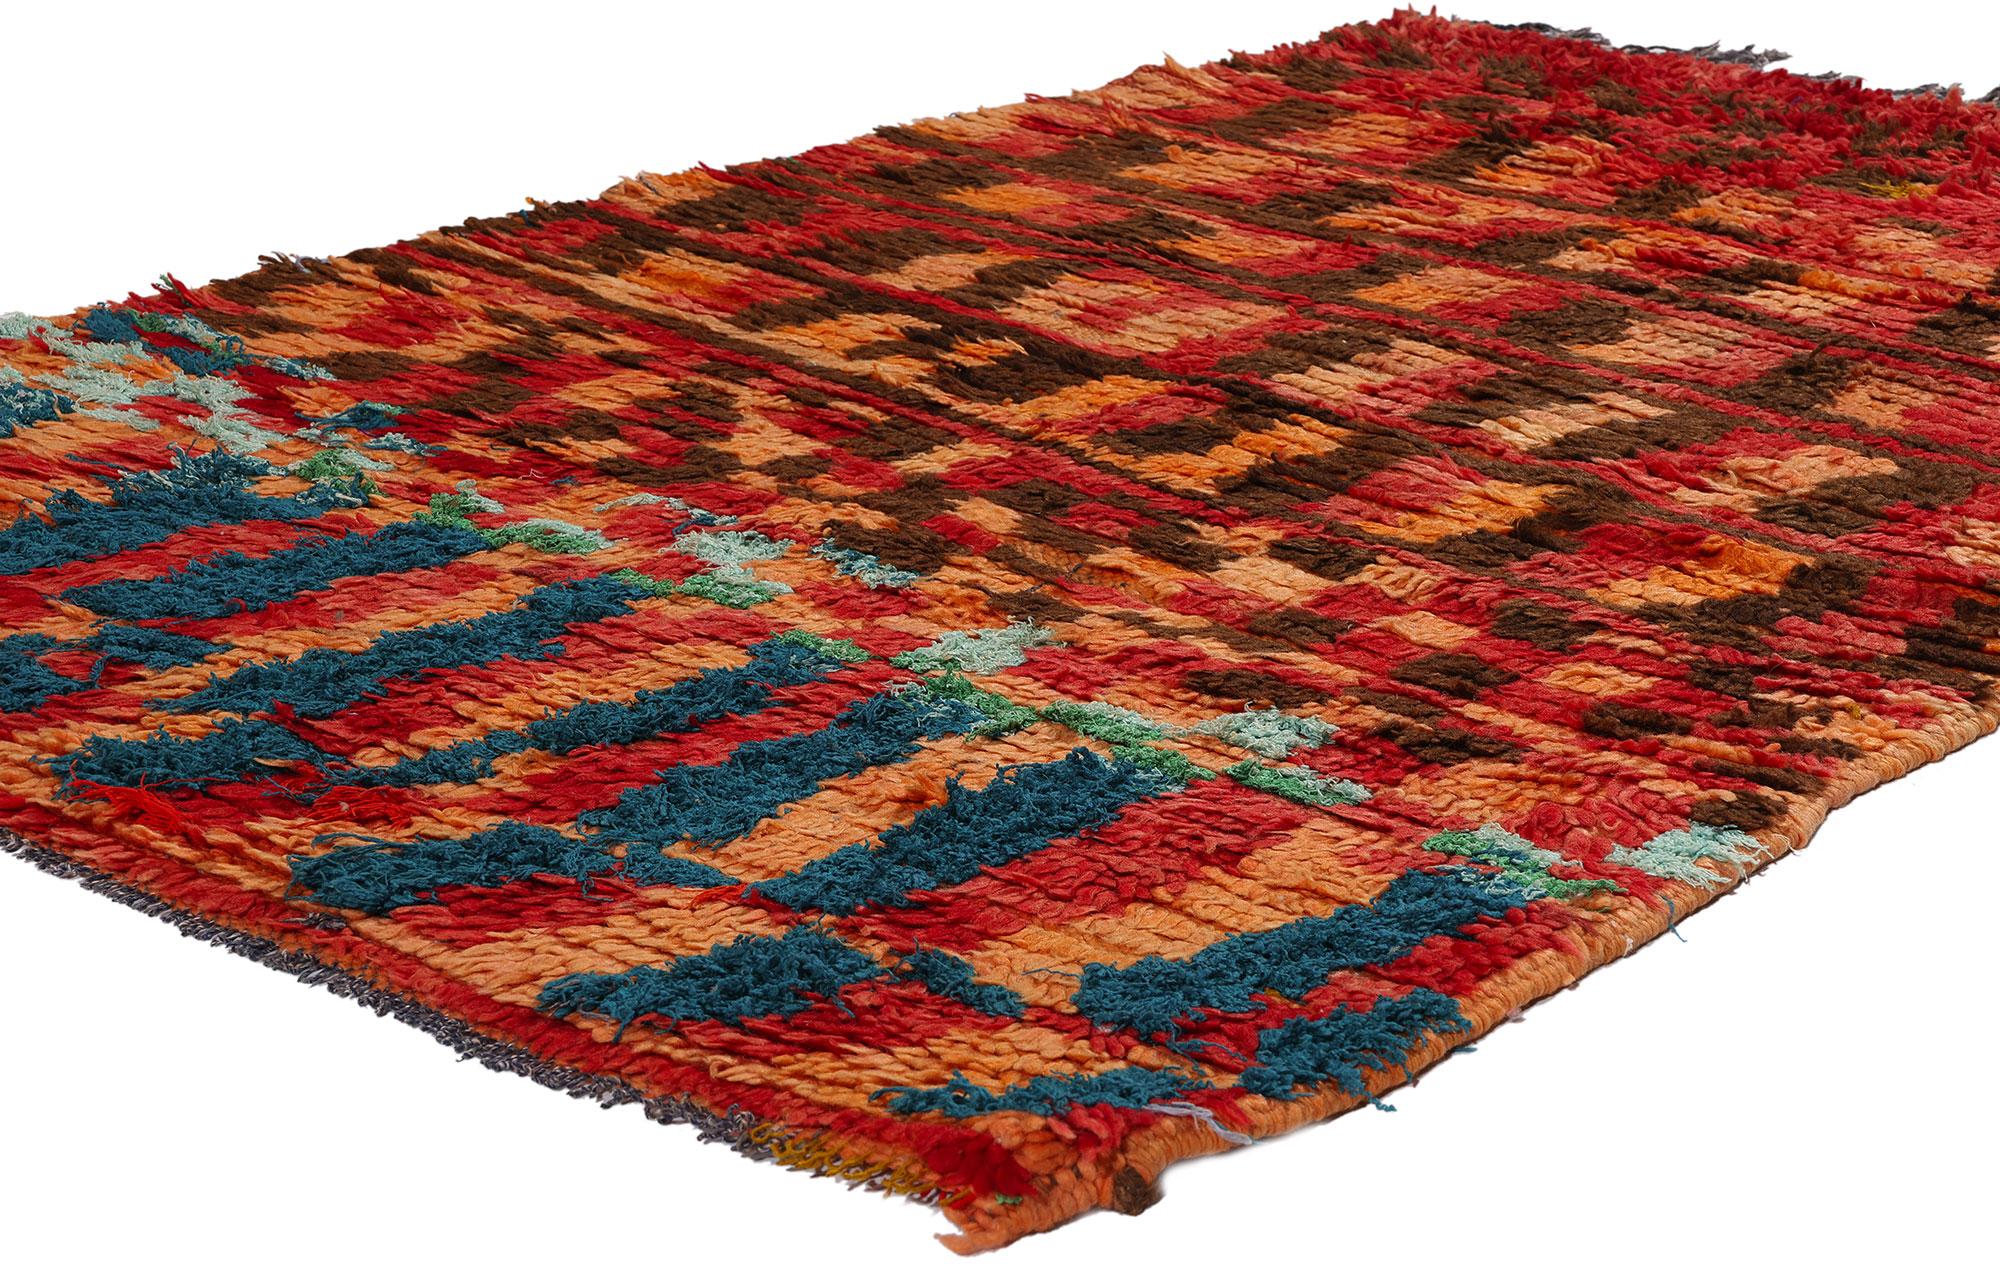 21733 Tapis marocain Boujad rouge vintage, 03'09 x 04'04. Originaires de la région du Boujad au Maroc, les tapis Boujad sont bien plus que de simples revêtements de sol ; ce sont des chefs-d'œuvre complexes d'art tissé à la main qui incarnent